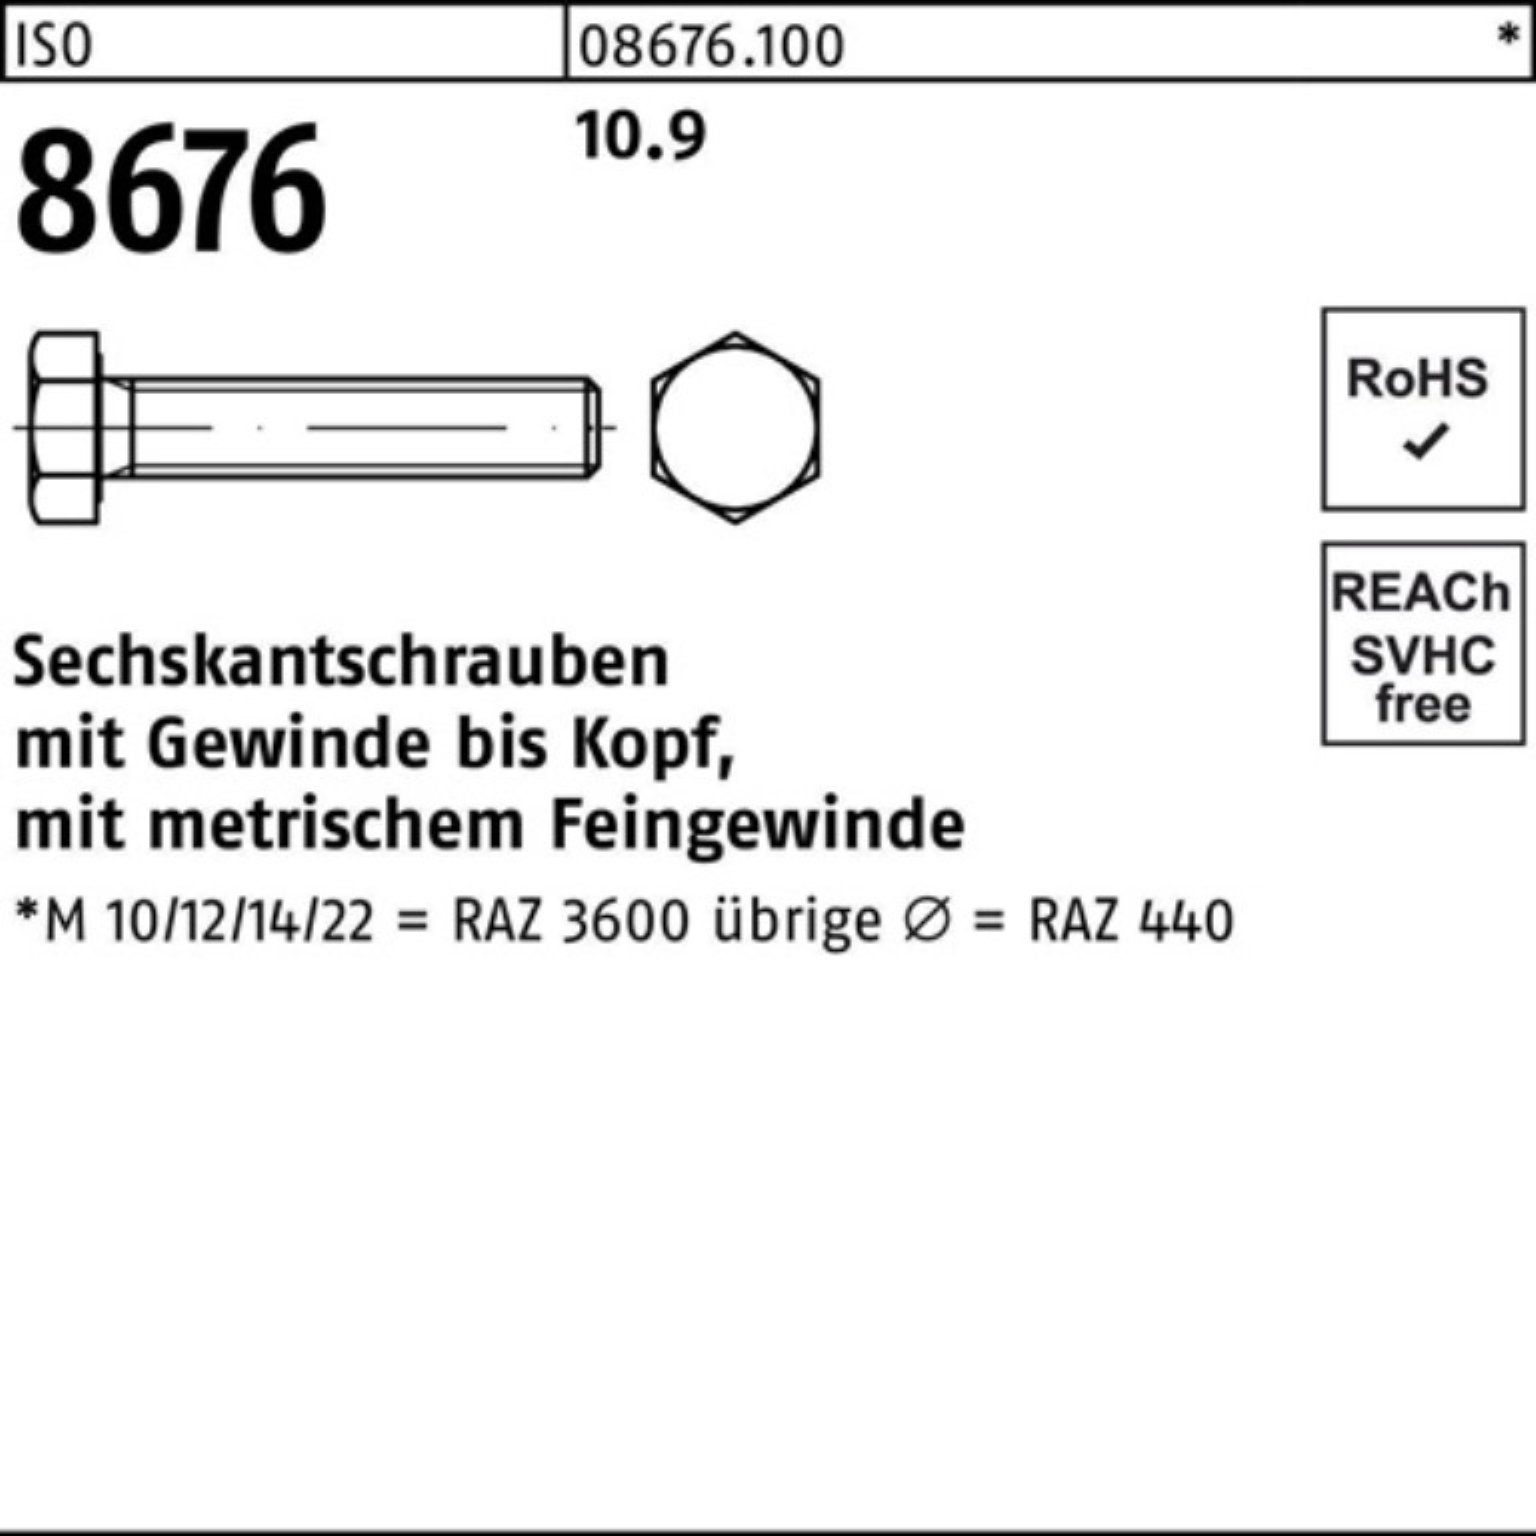 Sechskantschraube M20x1,5x110 100er 8676 Stück Pack ISO 25 Sechskantschraube Reyher 10.9 VG IS